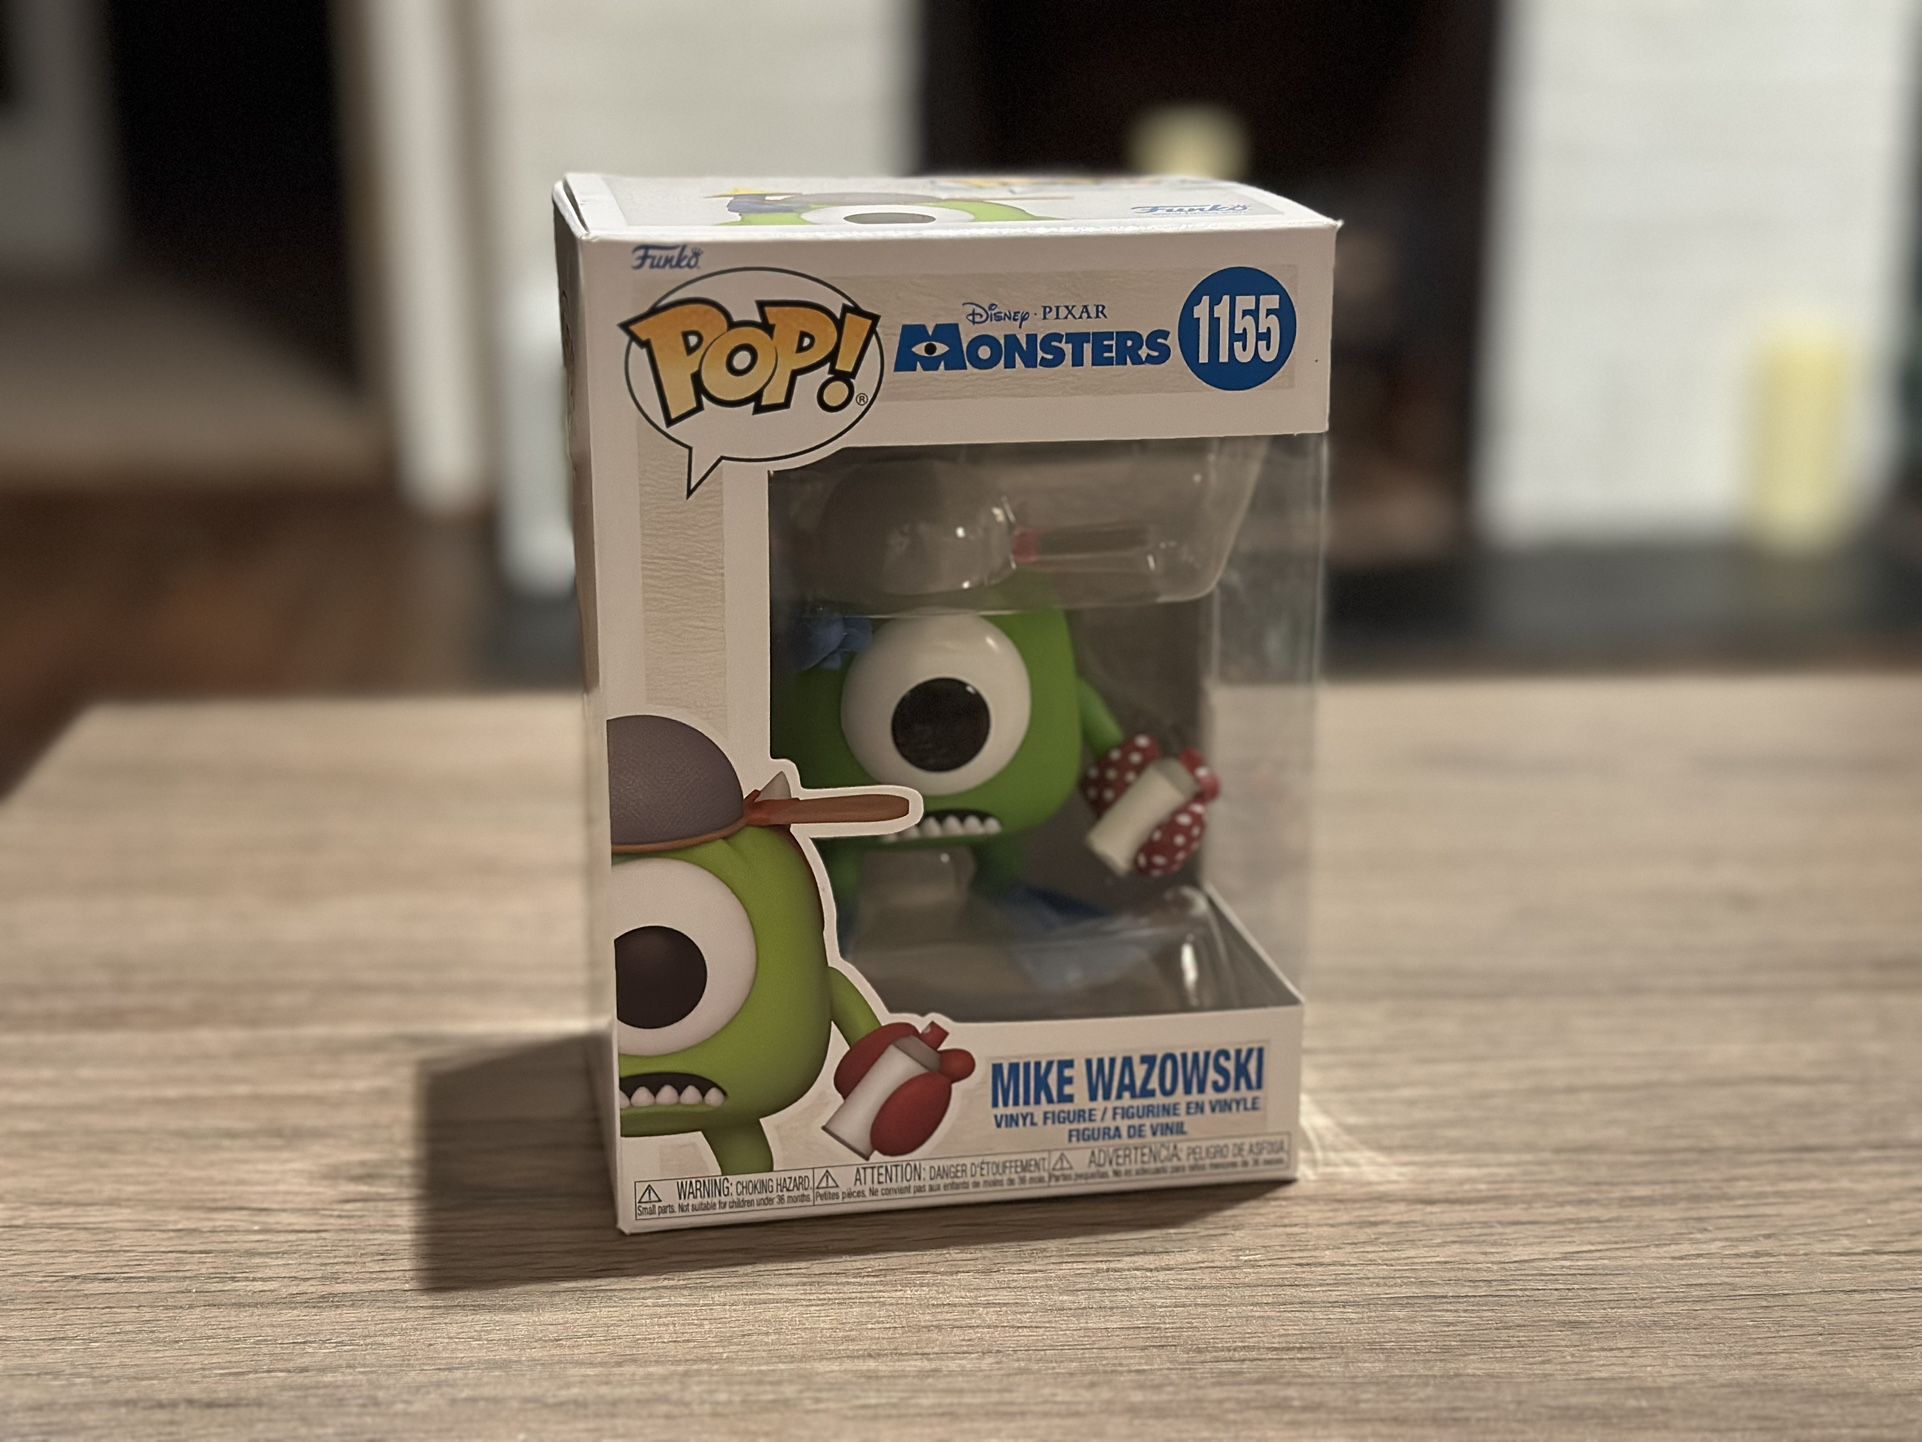 Funko Pop! Disney’s Pixar Monsters Inc 1155 Mike Wazowski